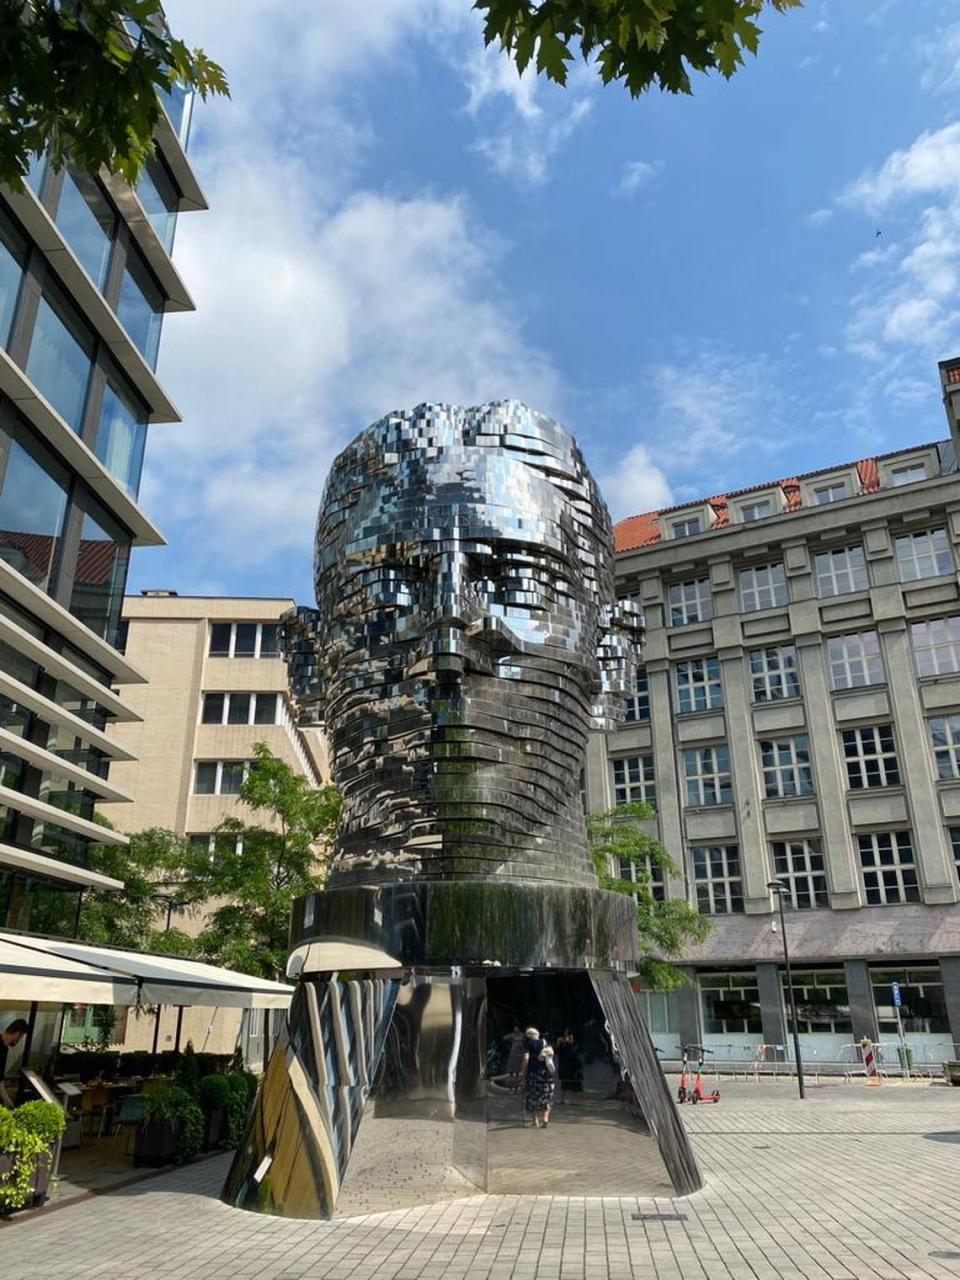 Cabeza de Franz Kafka, 2016, escultura distintiva del espacio público de Praga, hecha de 42 placas de metal giratorias que constantemente revelan y revelan el rostro de Franz Kafka por el escultor David Černý.